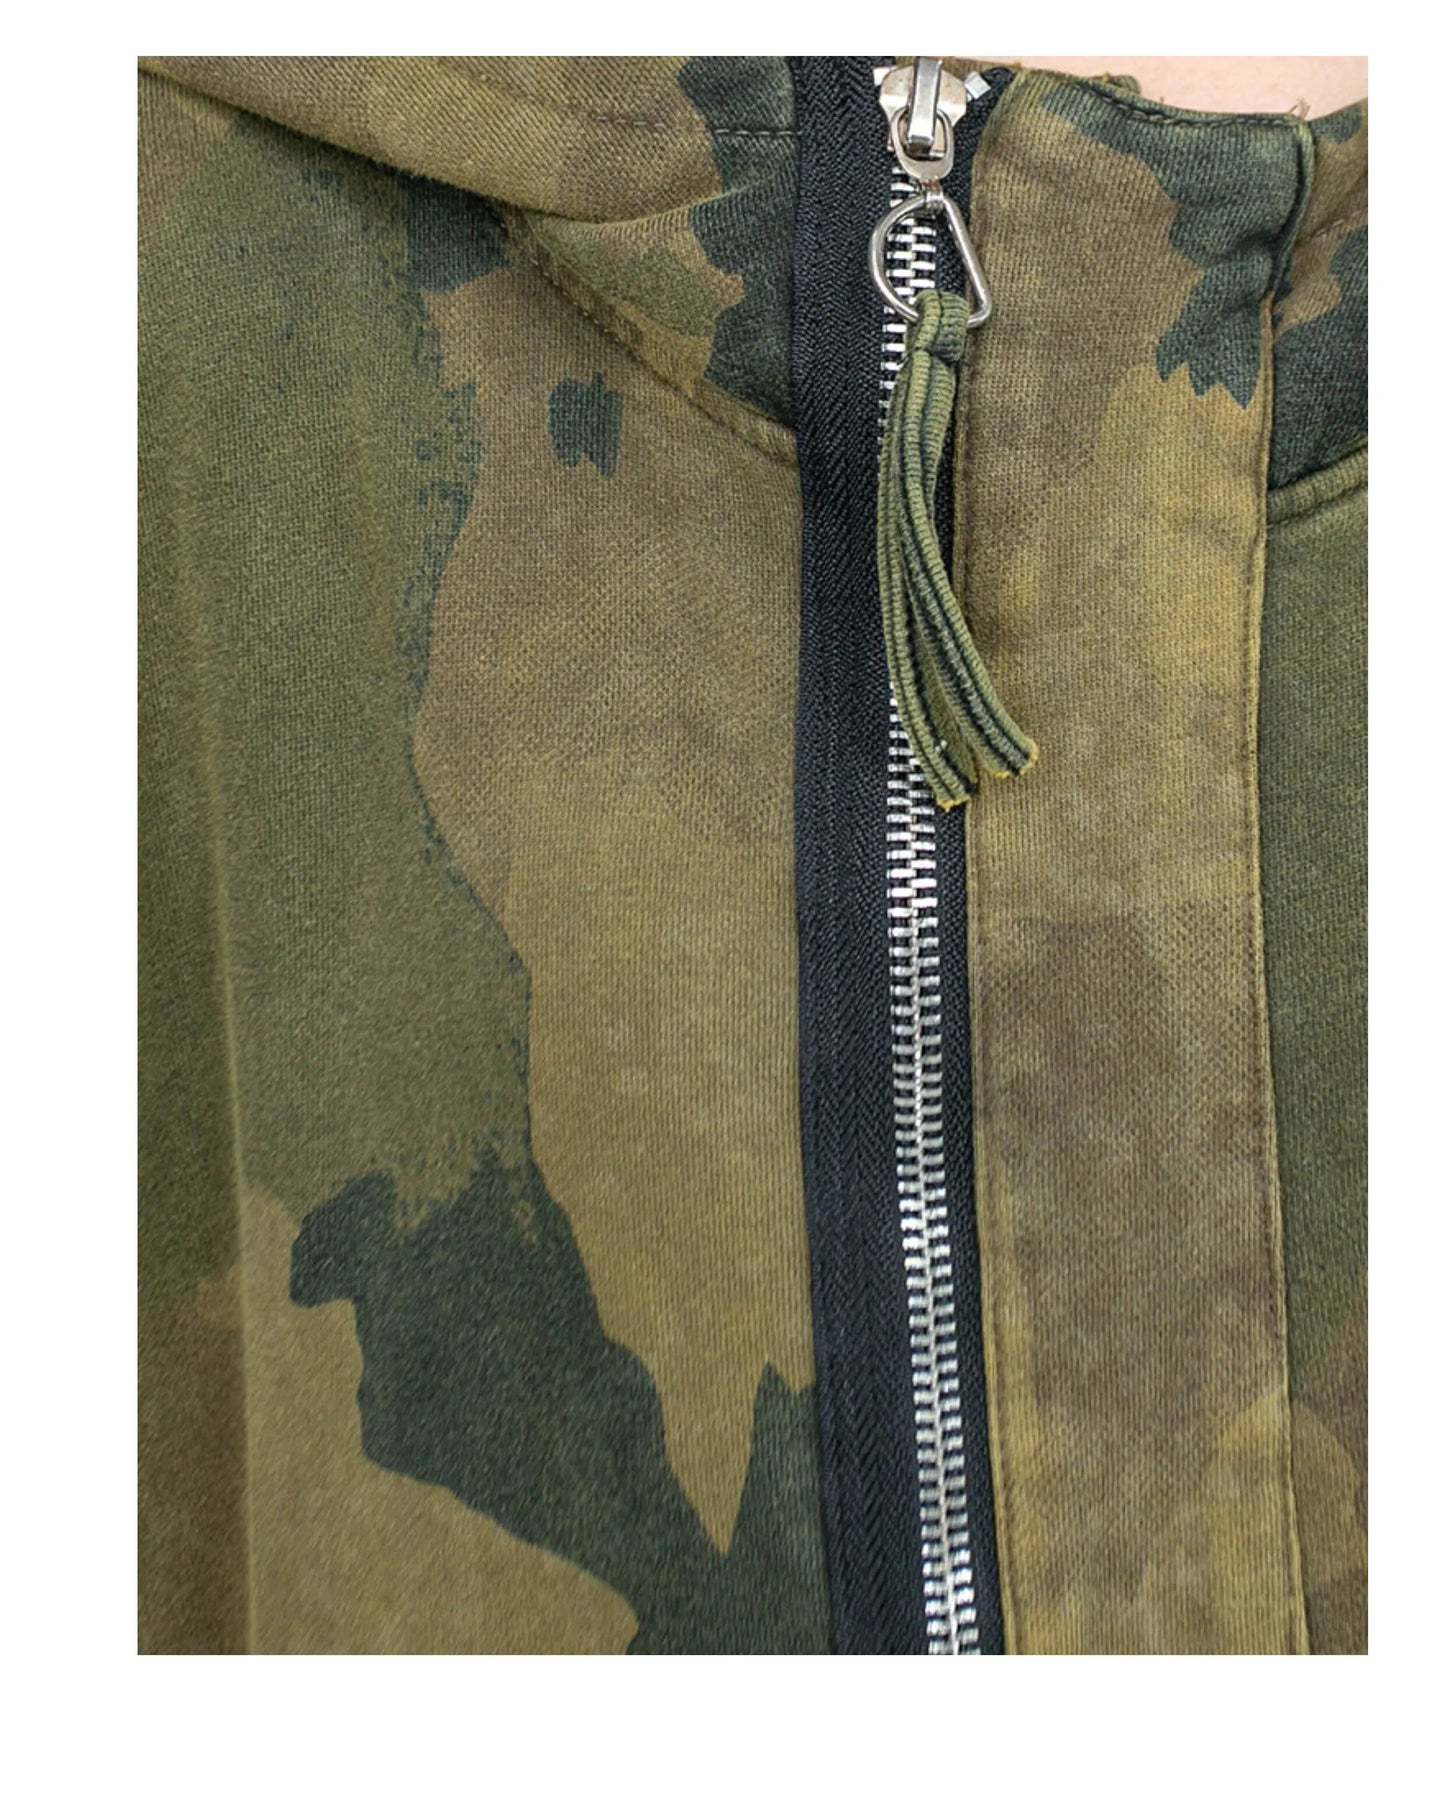 TEEK - Camouflage Long Sleeved Hooded Jumpsuit JUMPSUIT theteekdotcom   